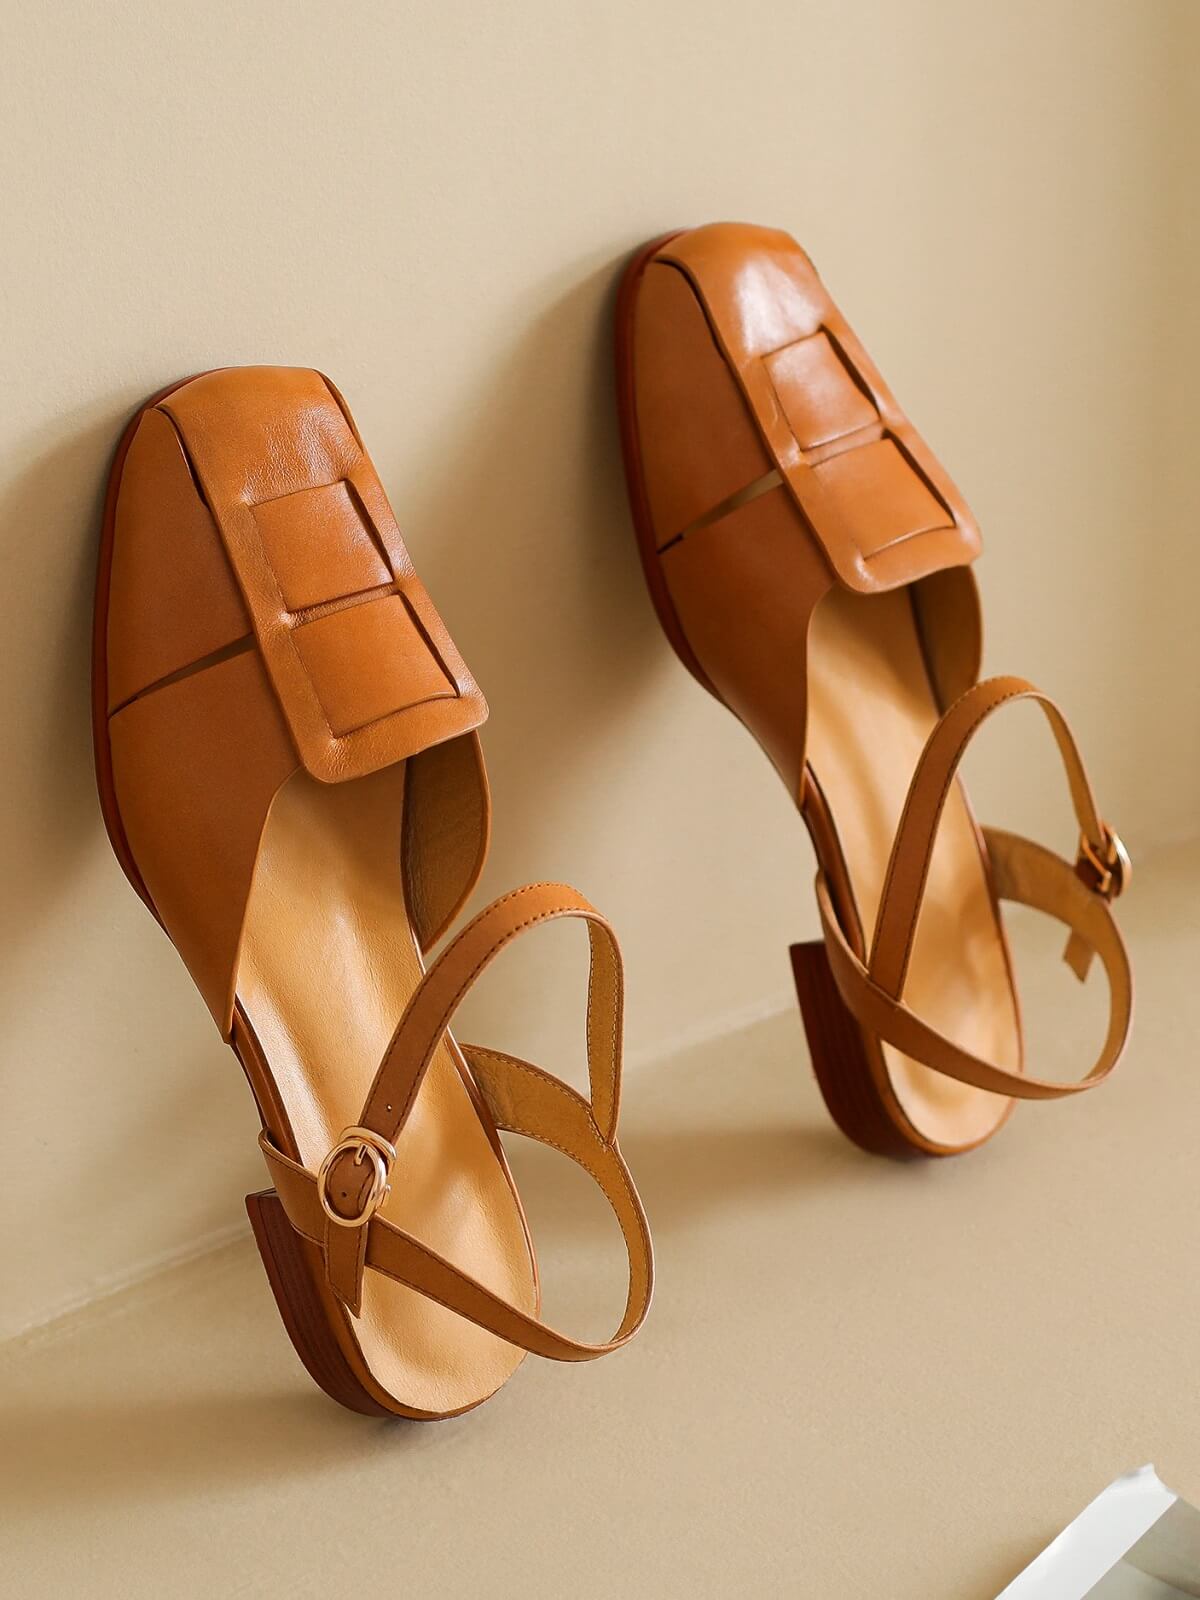 Buy Sana K Luxurious Footwear Black Flat Spring Tie Up Heels Sandals online